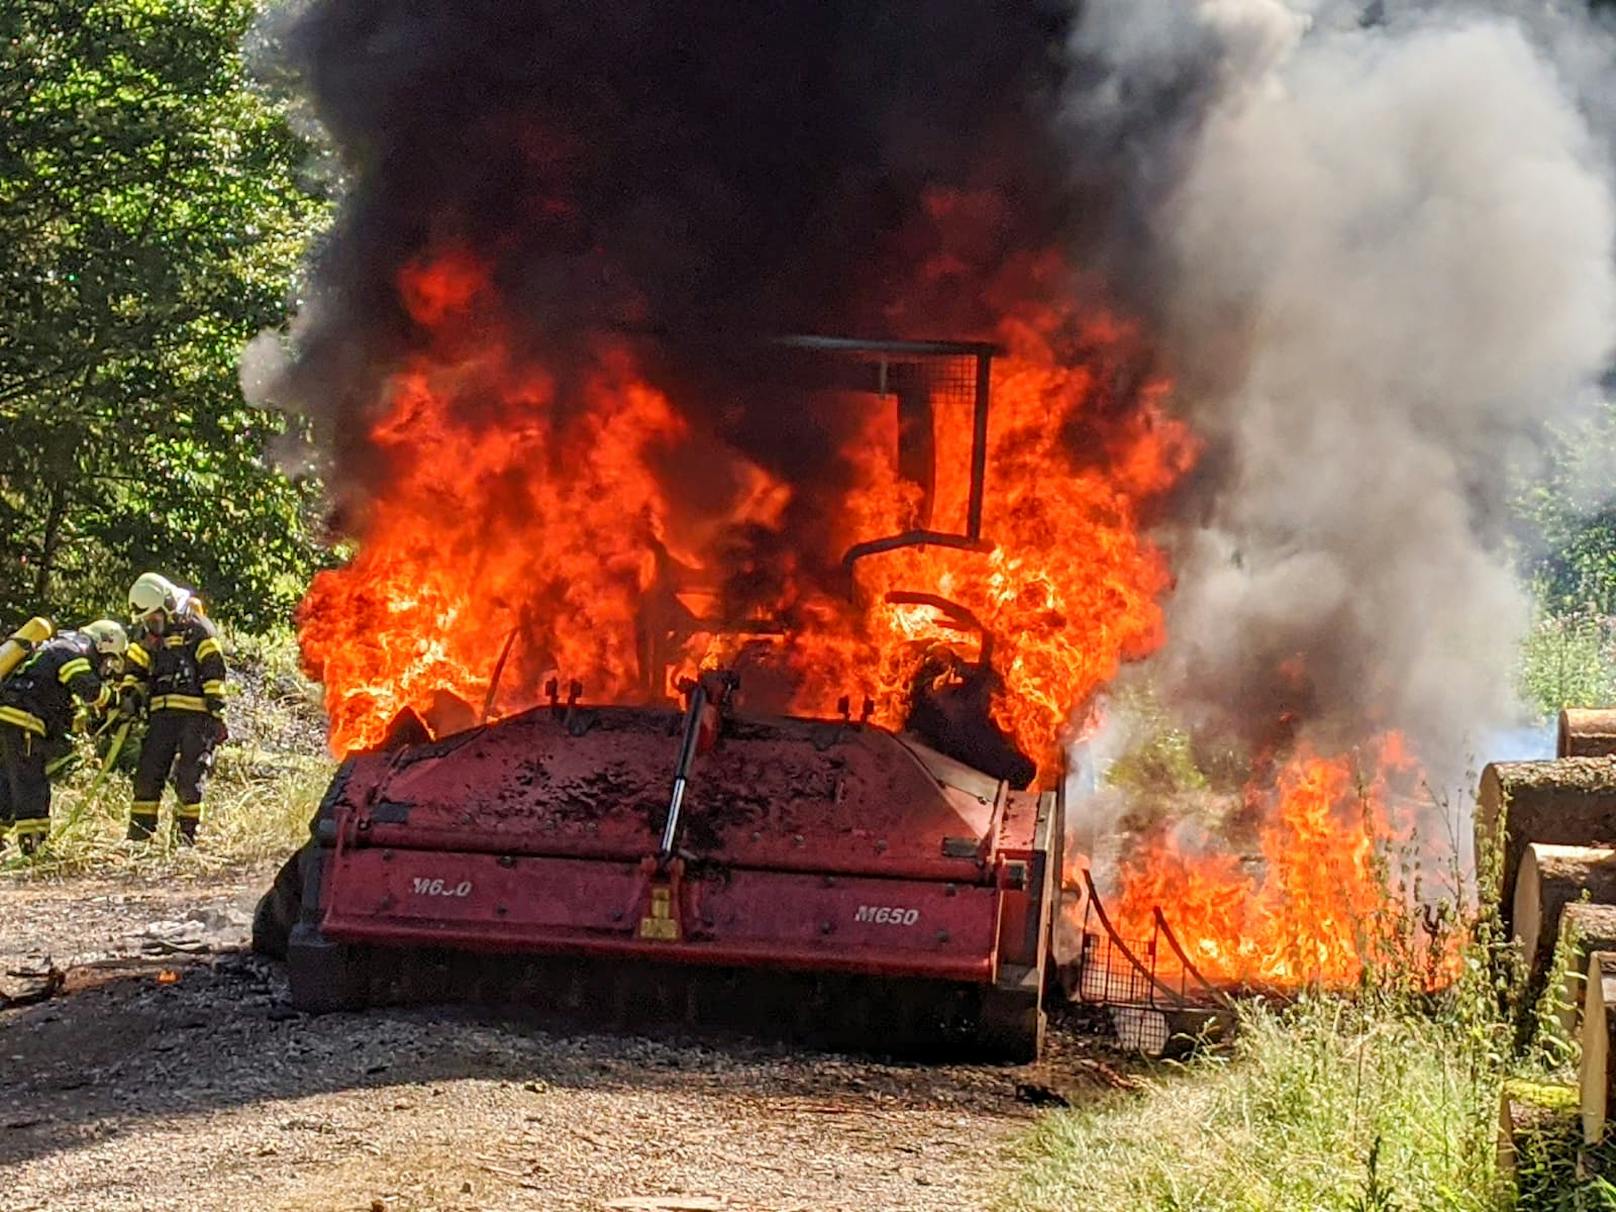 Der Forstarbeiter schaffte es gerade noch den Traktor auf die Forststraße zu fahren. Dann ging das Fahrzeug in Flammen auf.